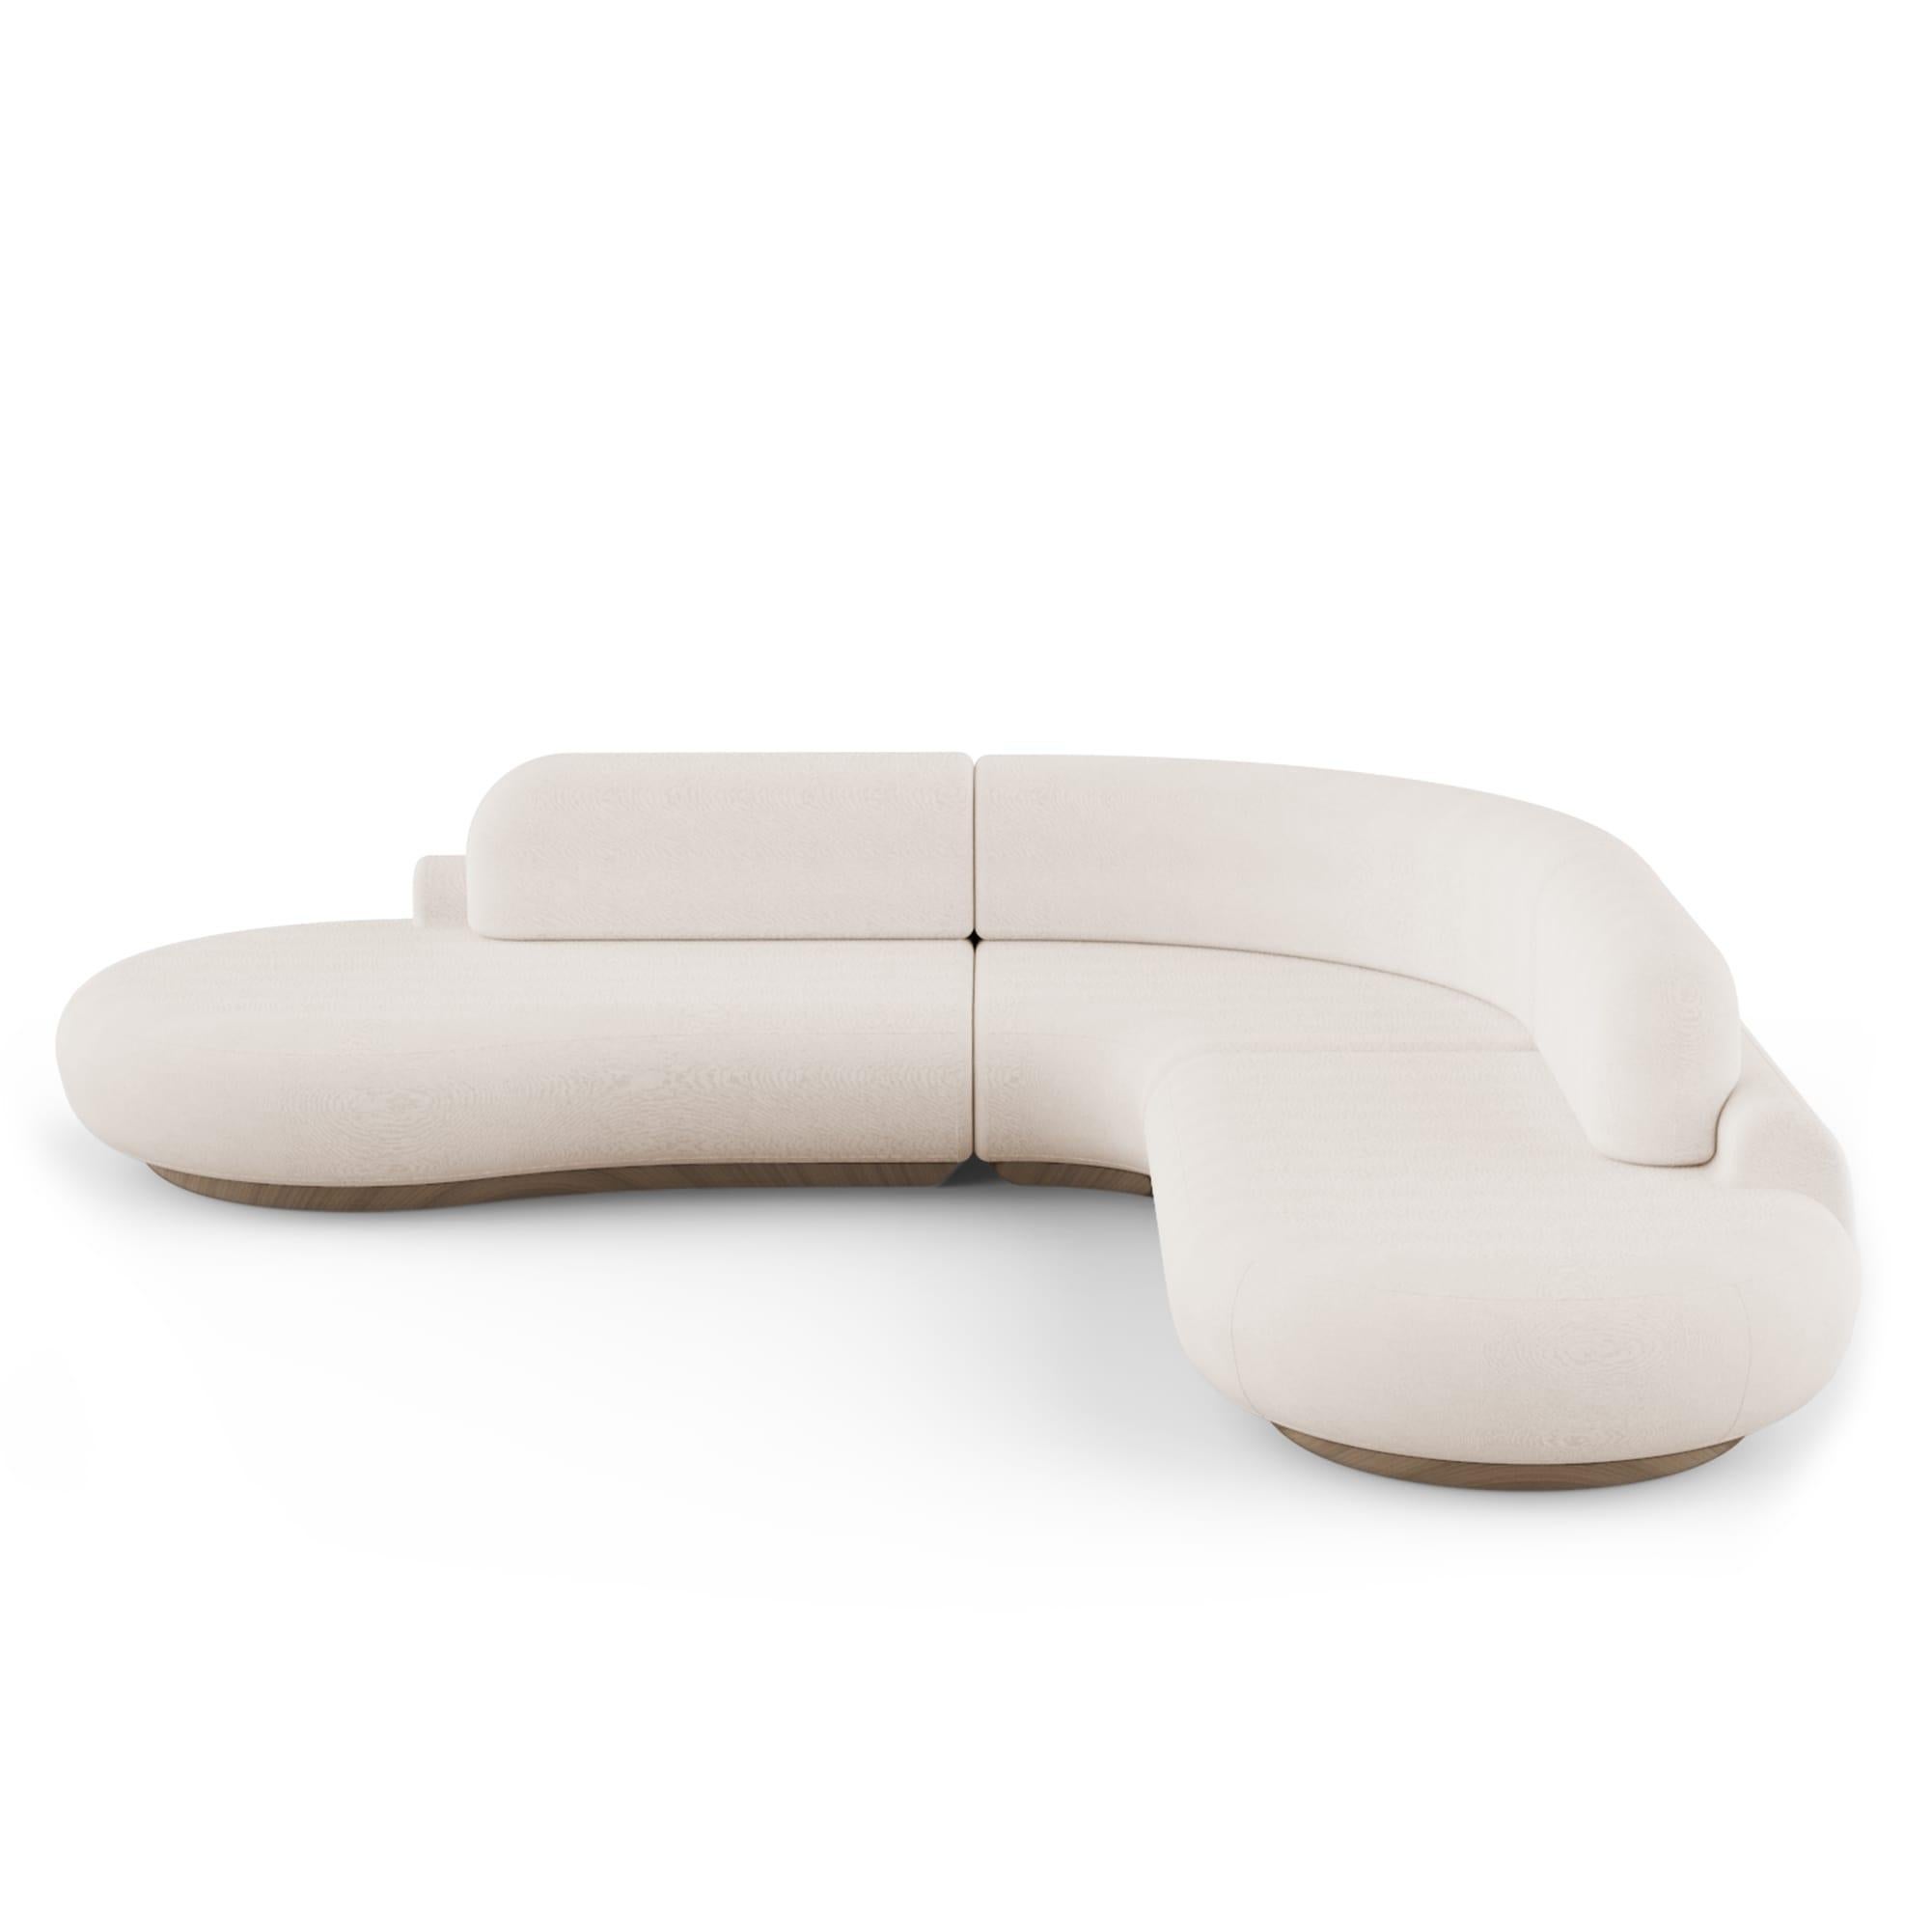 Naked Sofa von Dooq
Abmessungen: B 312 x T 332 x H 78 cm.
 Sitzhöhe 40 cm.
MATERIAL: Sockel aus Buchenholz.
 Polstermaterial glatter Samt 
 Auch in Kunstleder erhältlich.

Das Naked Sofa zeigt eine skulpturale und organische Form, die den Benutzer